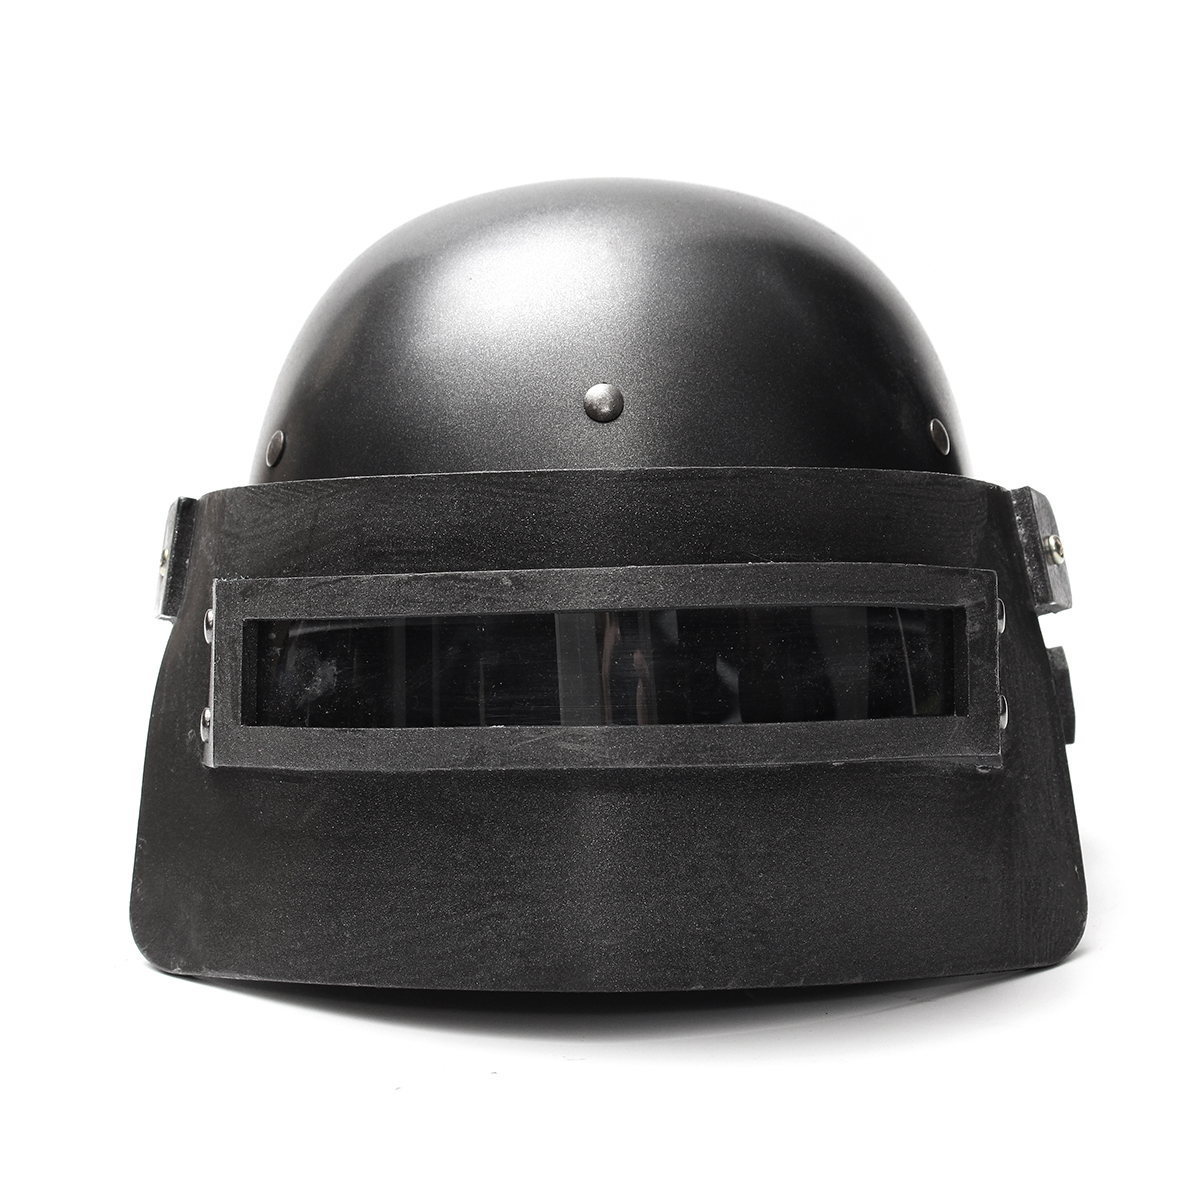 шлем 3 уровня из пубг фото 1